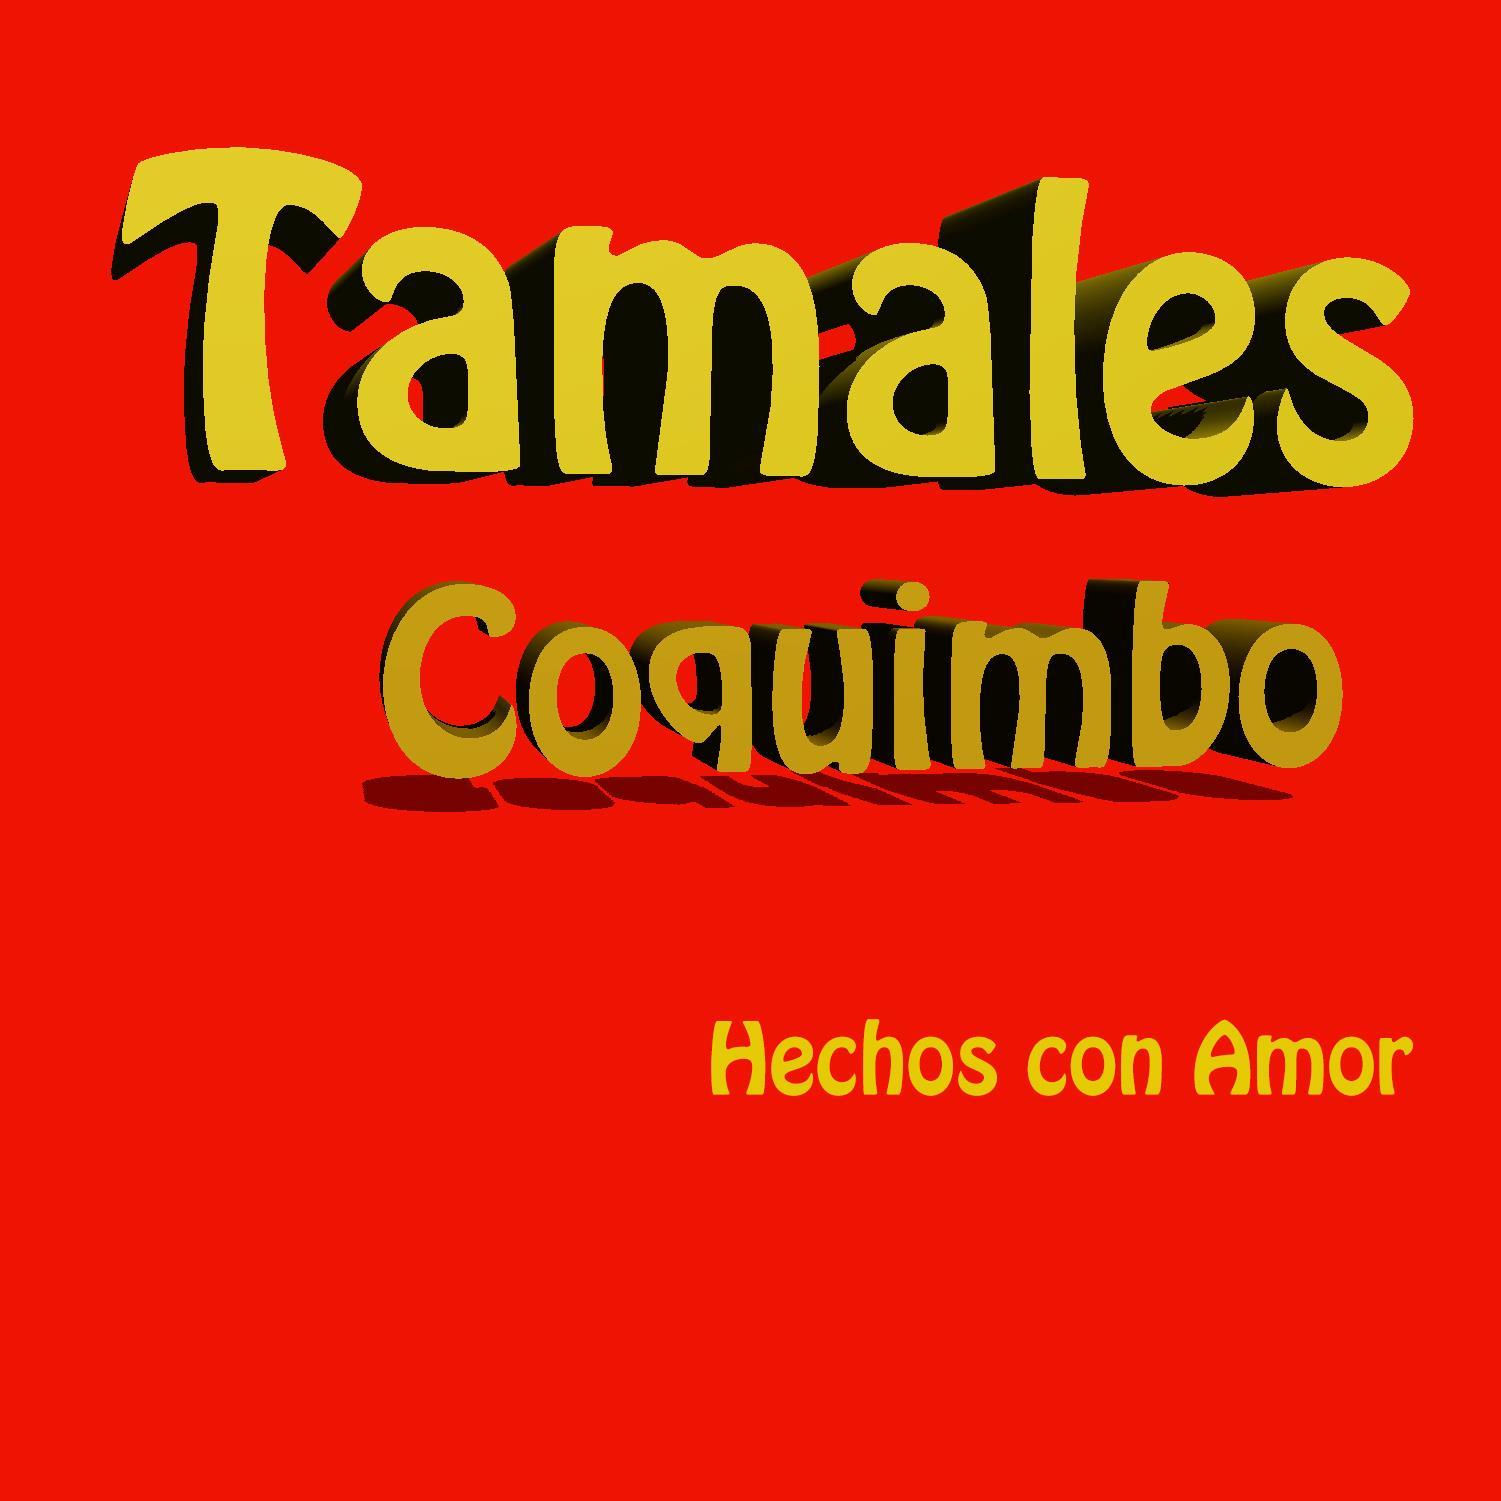 Tamales Coquimbo es un negocio  familiar de tamales y atoles artesanales, hechos con ingredientes frescos y de primera calidad.